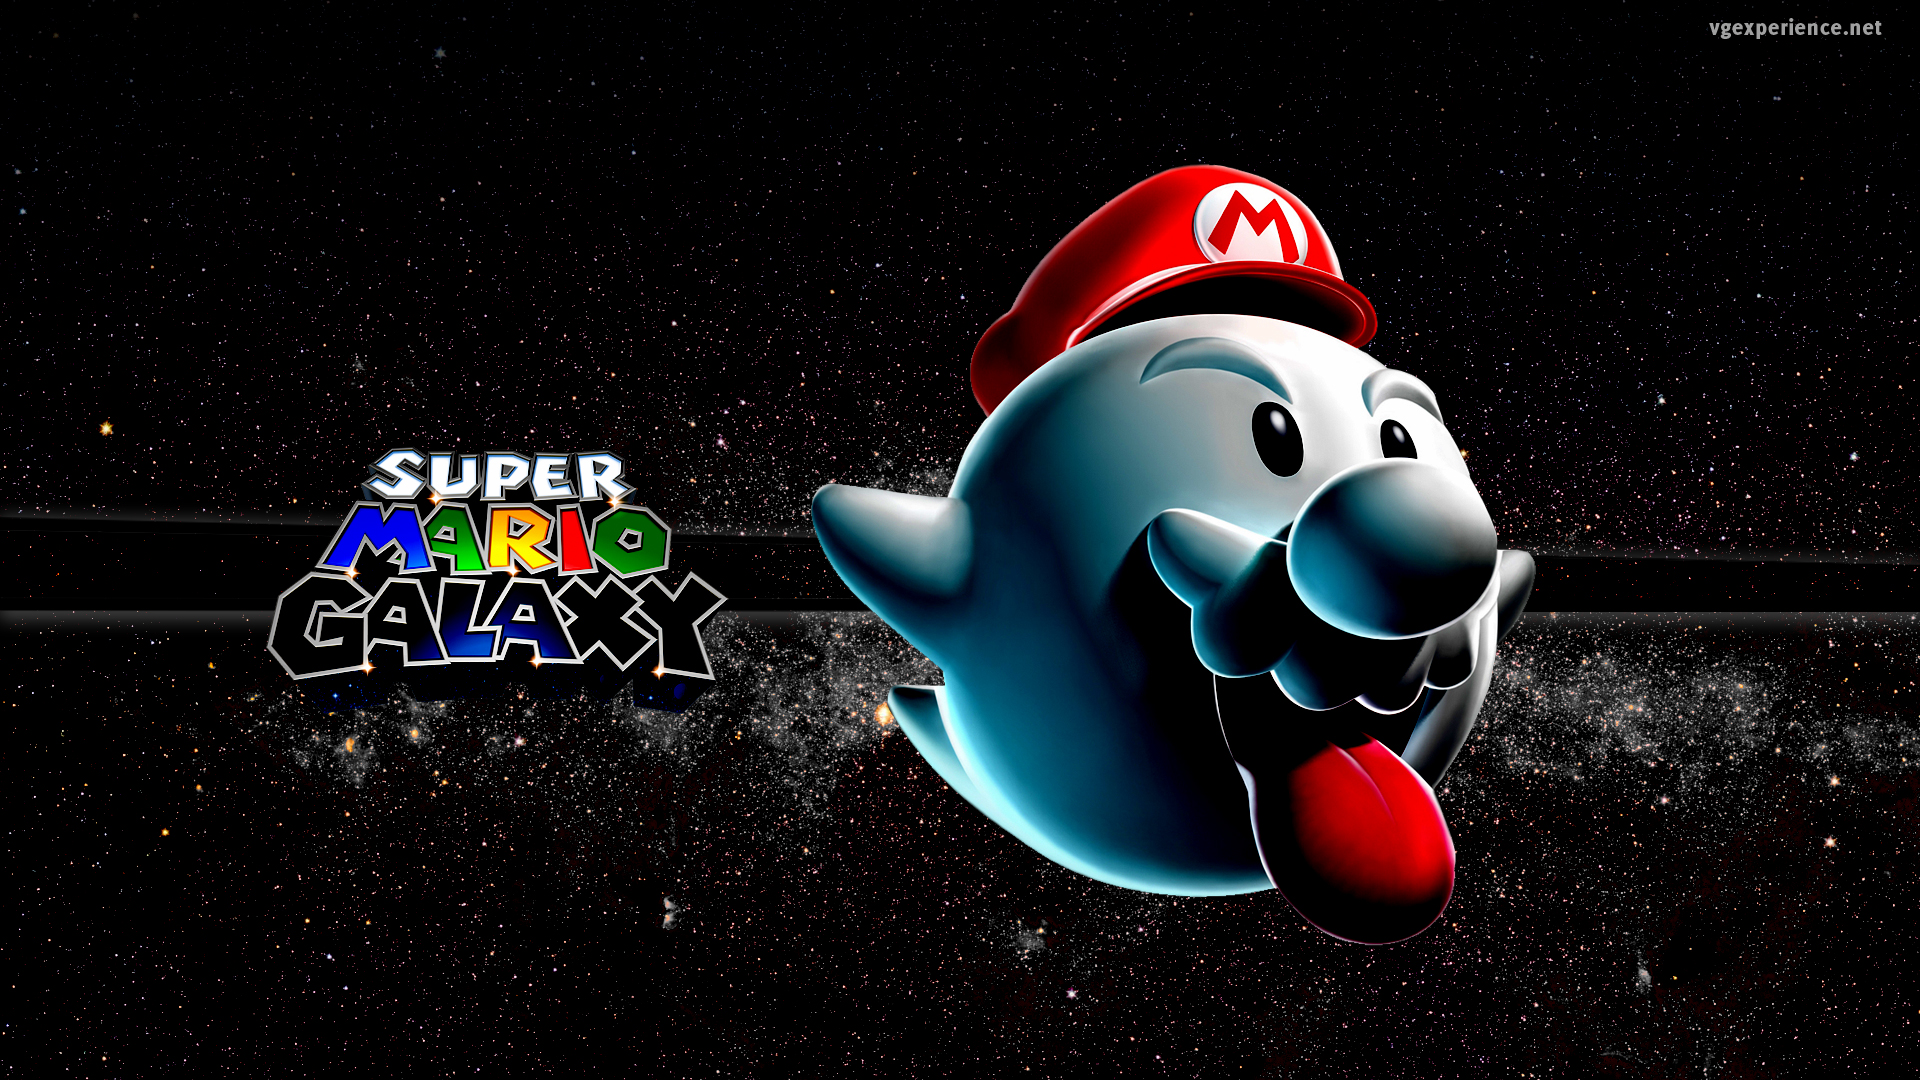 Super Mario Galaxy HD Wallpaper